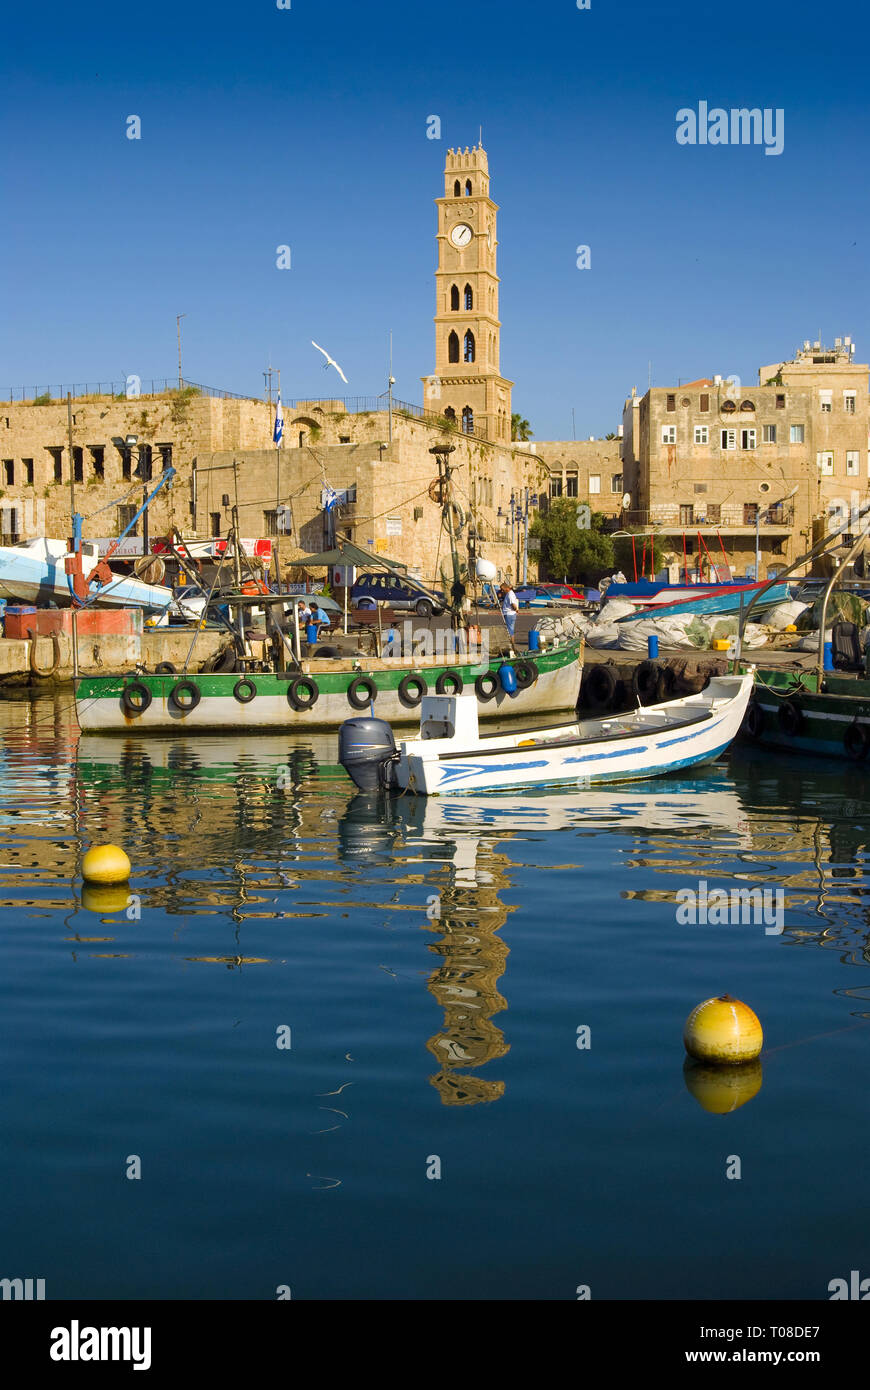 Boat in Fishermen's harbor in Akko, Israel Stock Photo